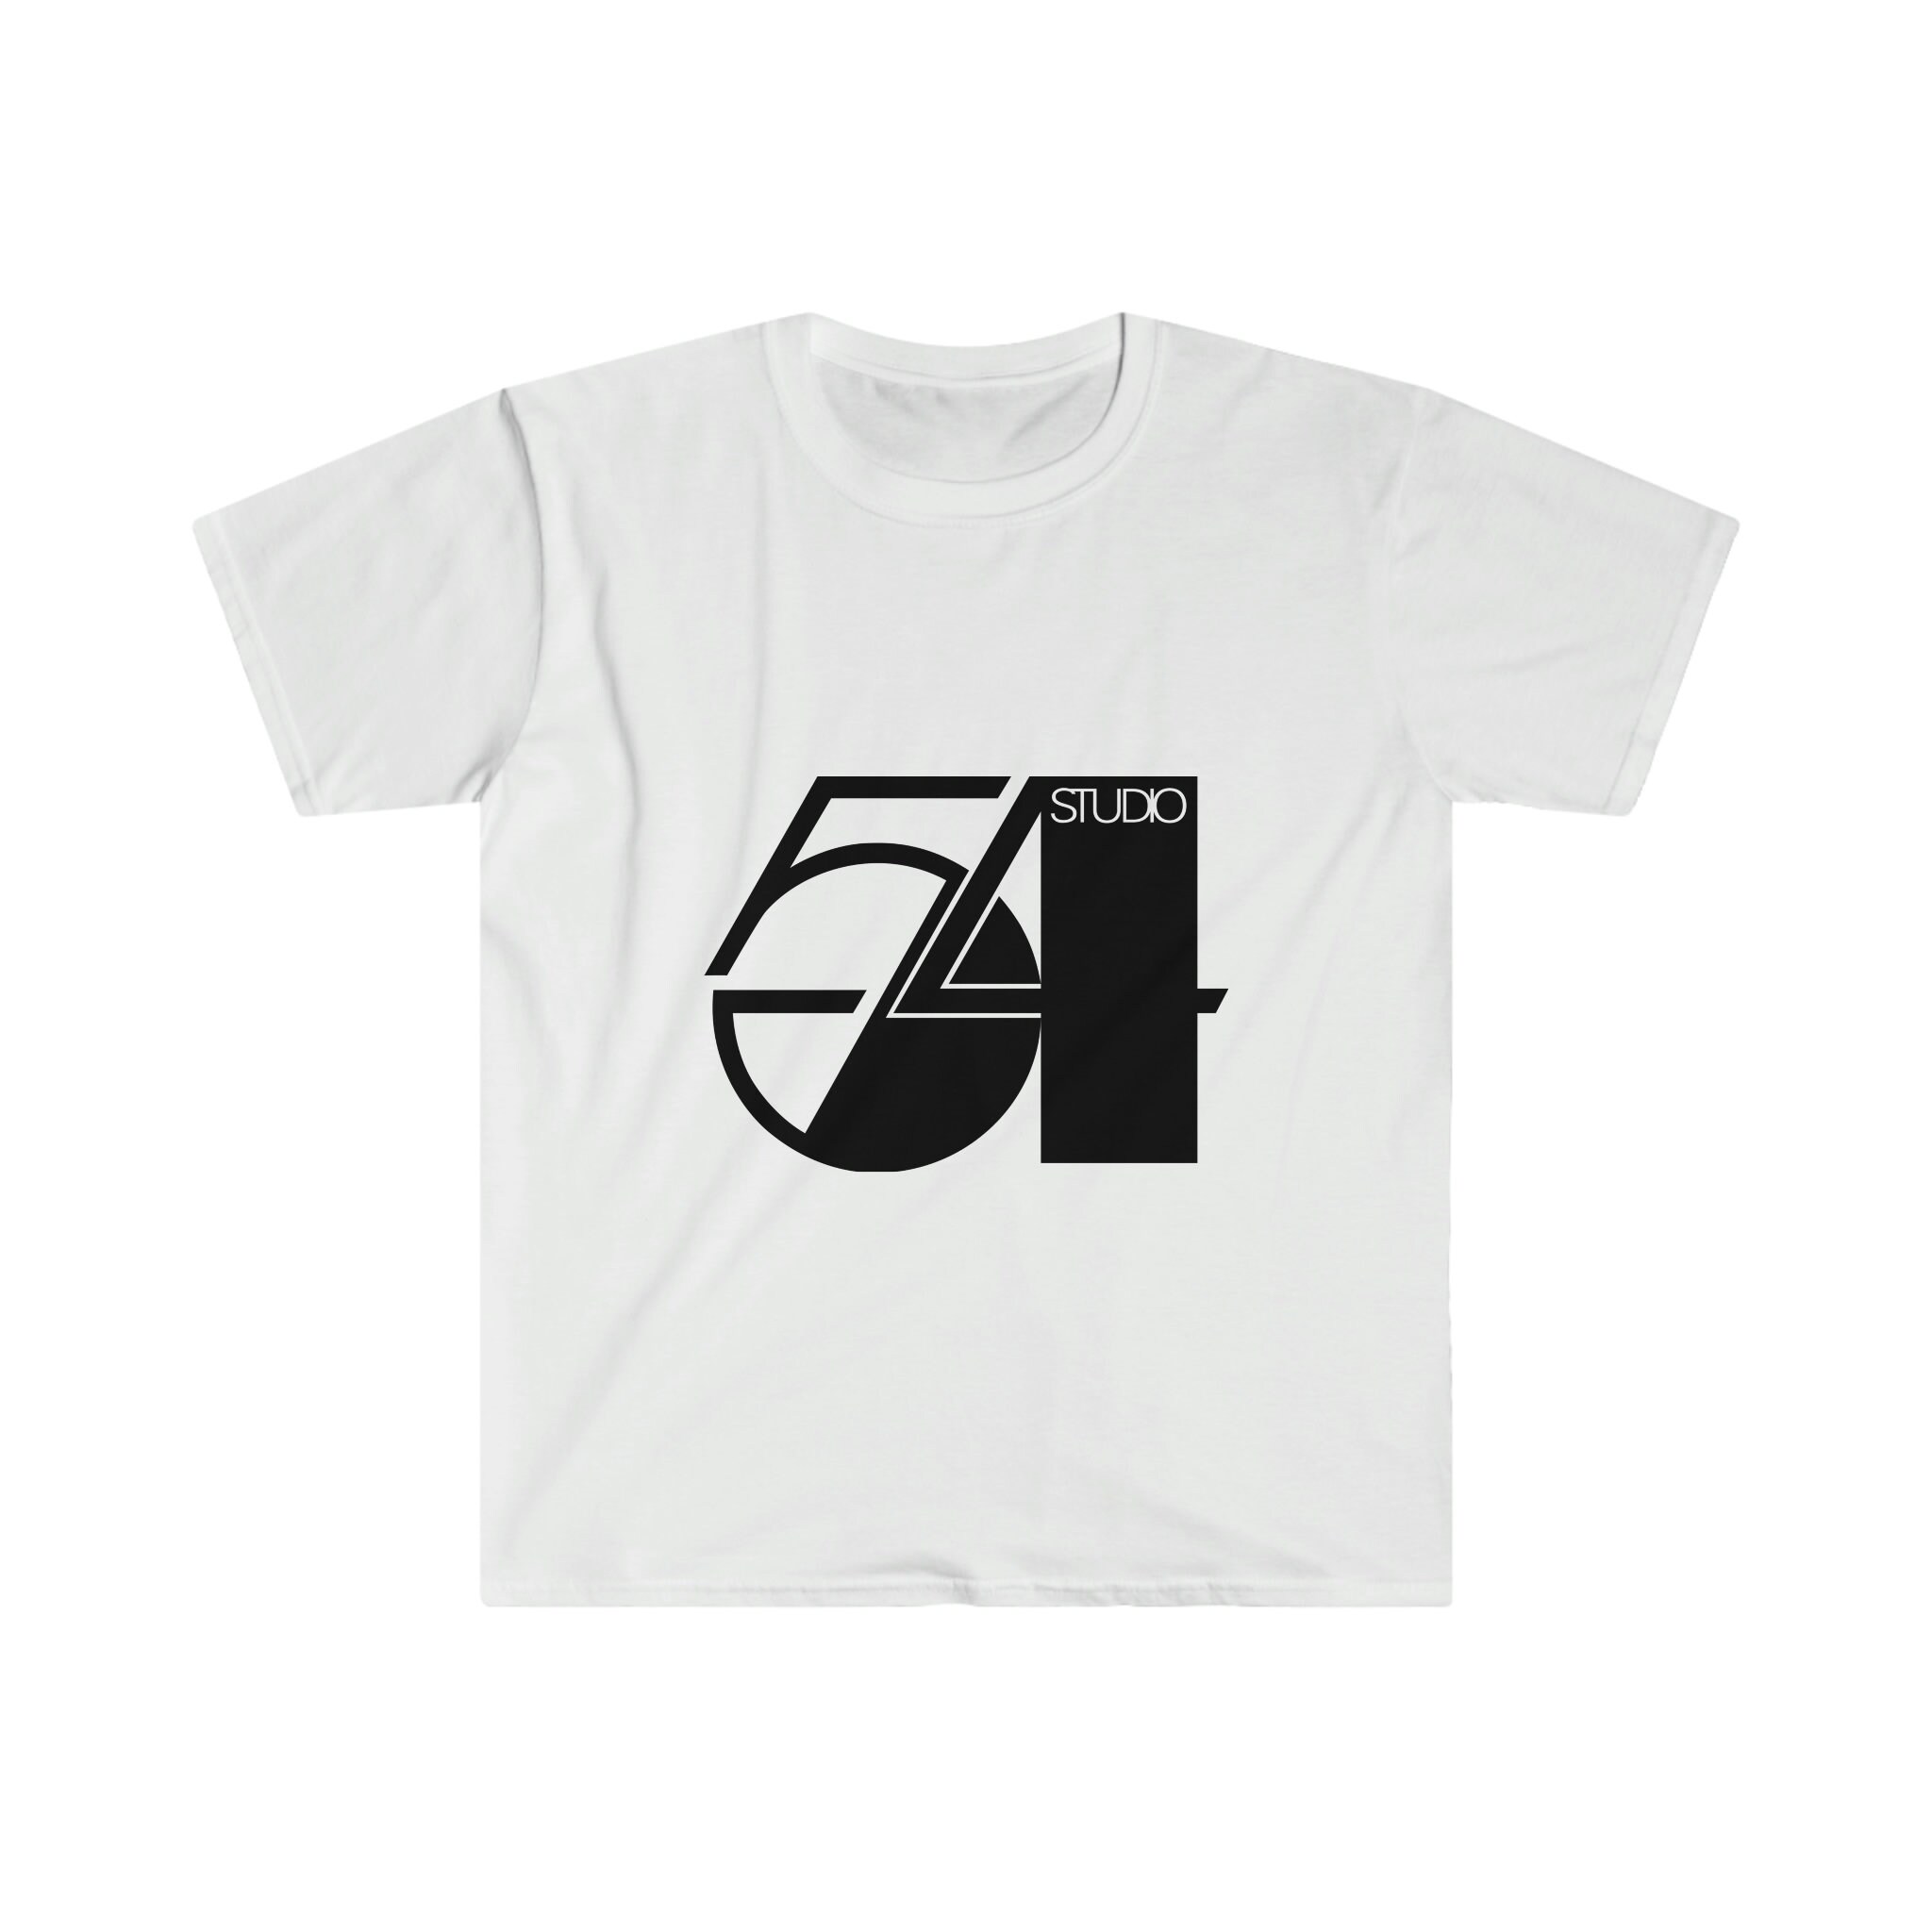 Studio 54 Shirt - Etsy